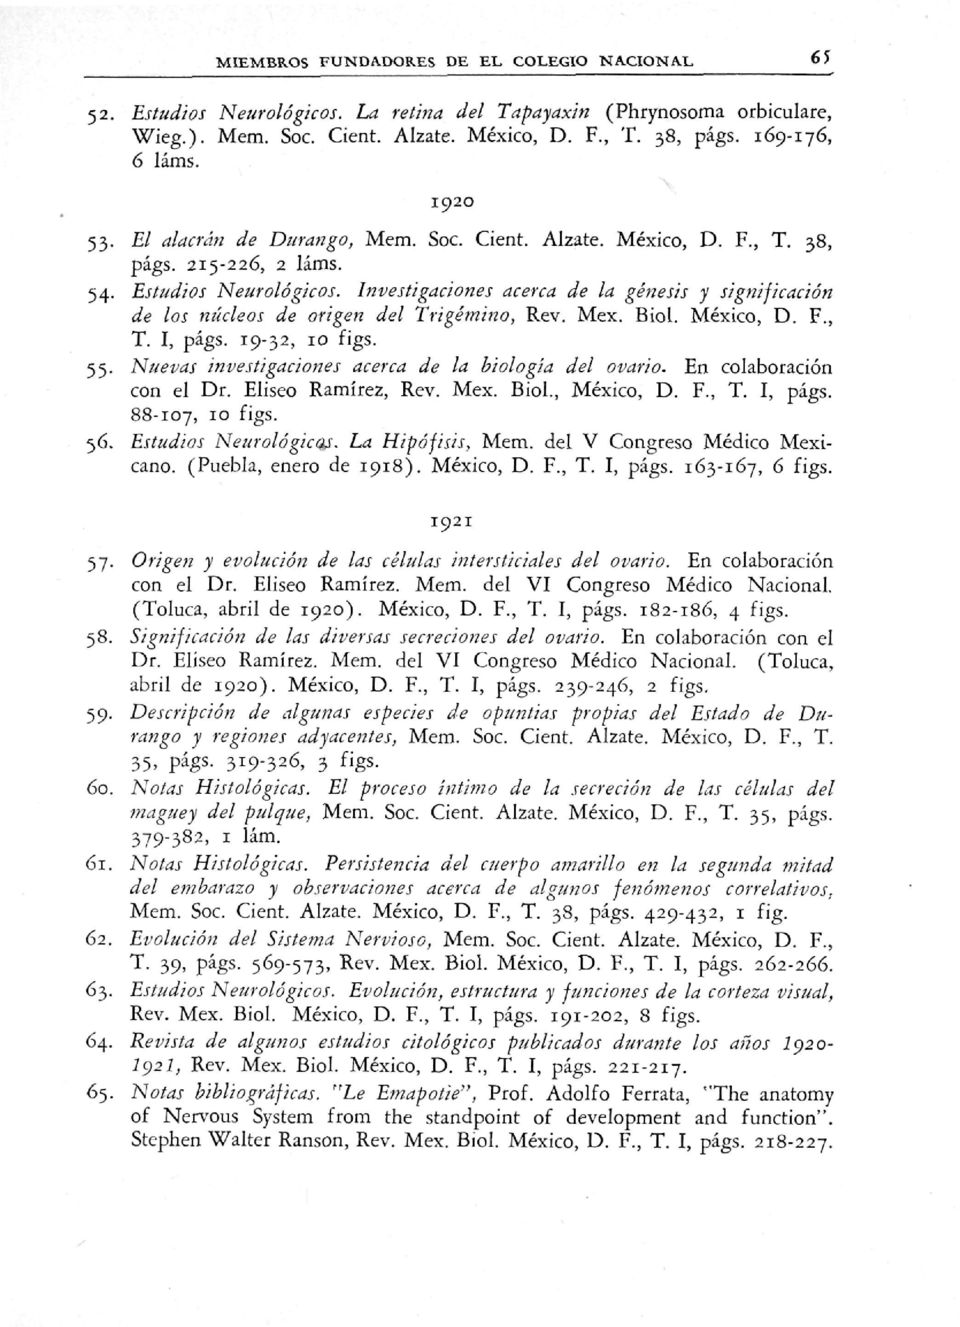 Investigaciones acerca de la génesis y significación de los núcleos de origen del Trigémino, Rev. Mex. Biol. México, D. F., T. I, págs. 19-32, 10 figs. 55.